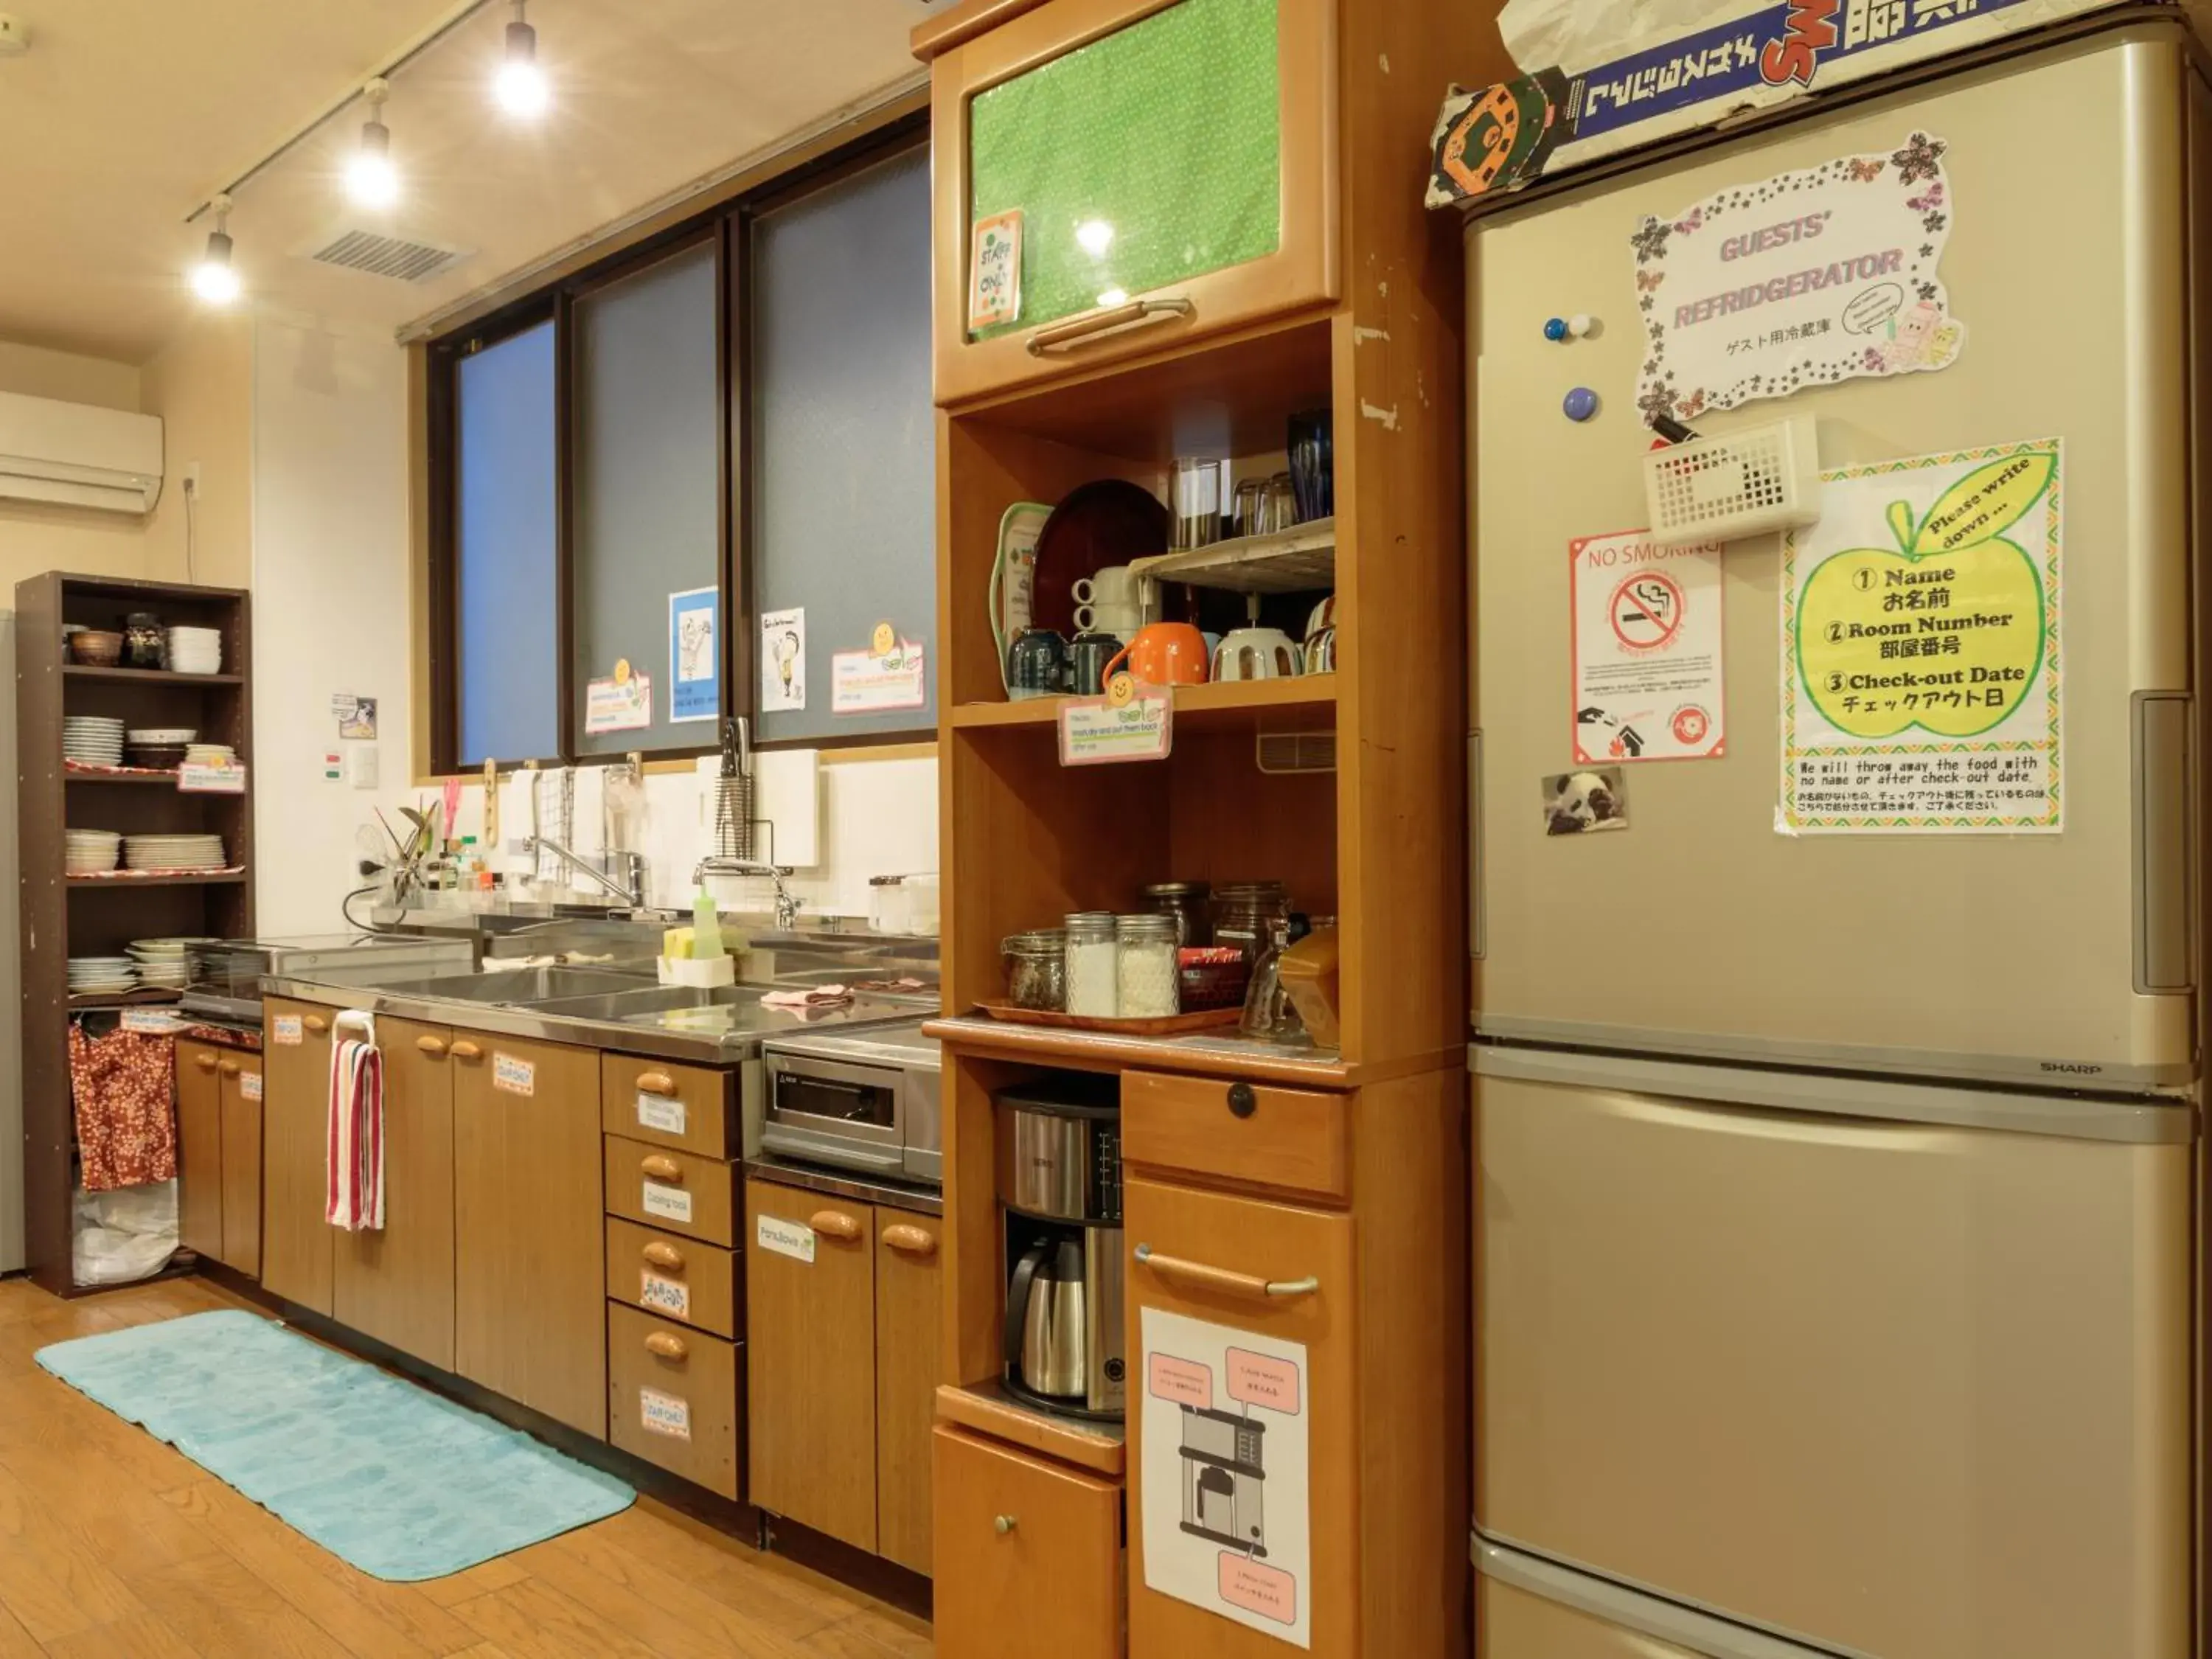 Communal kitchen in Kyoto Hana Hostel